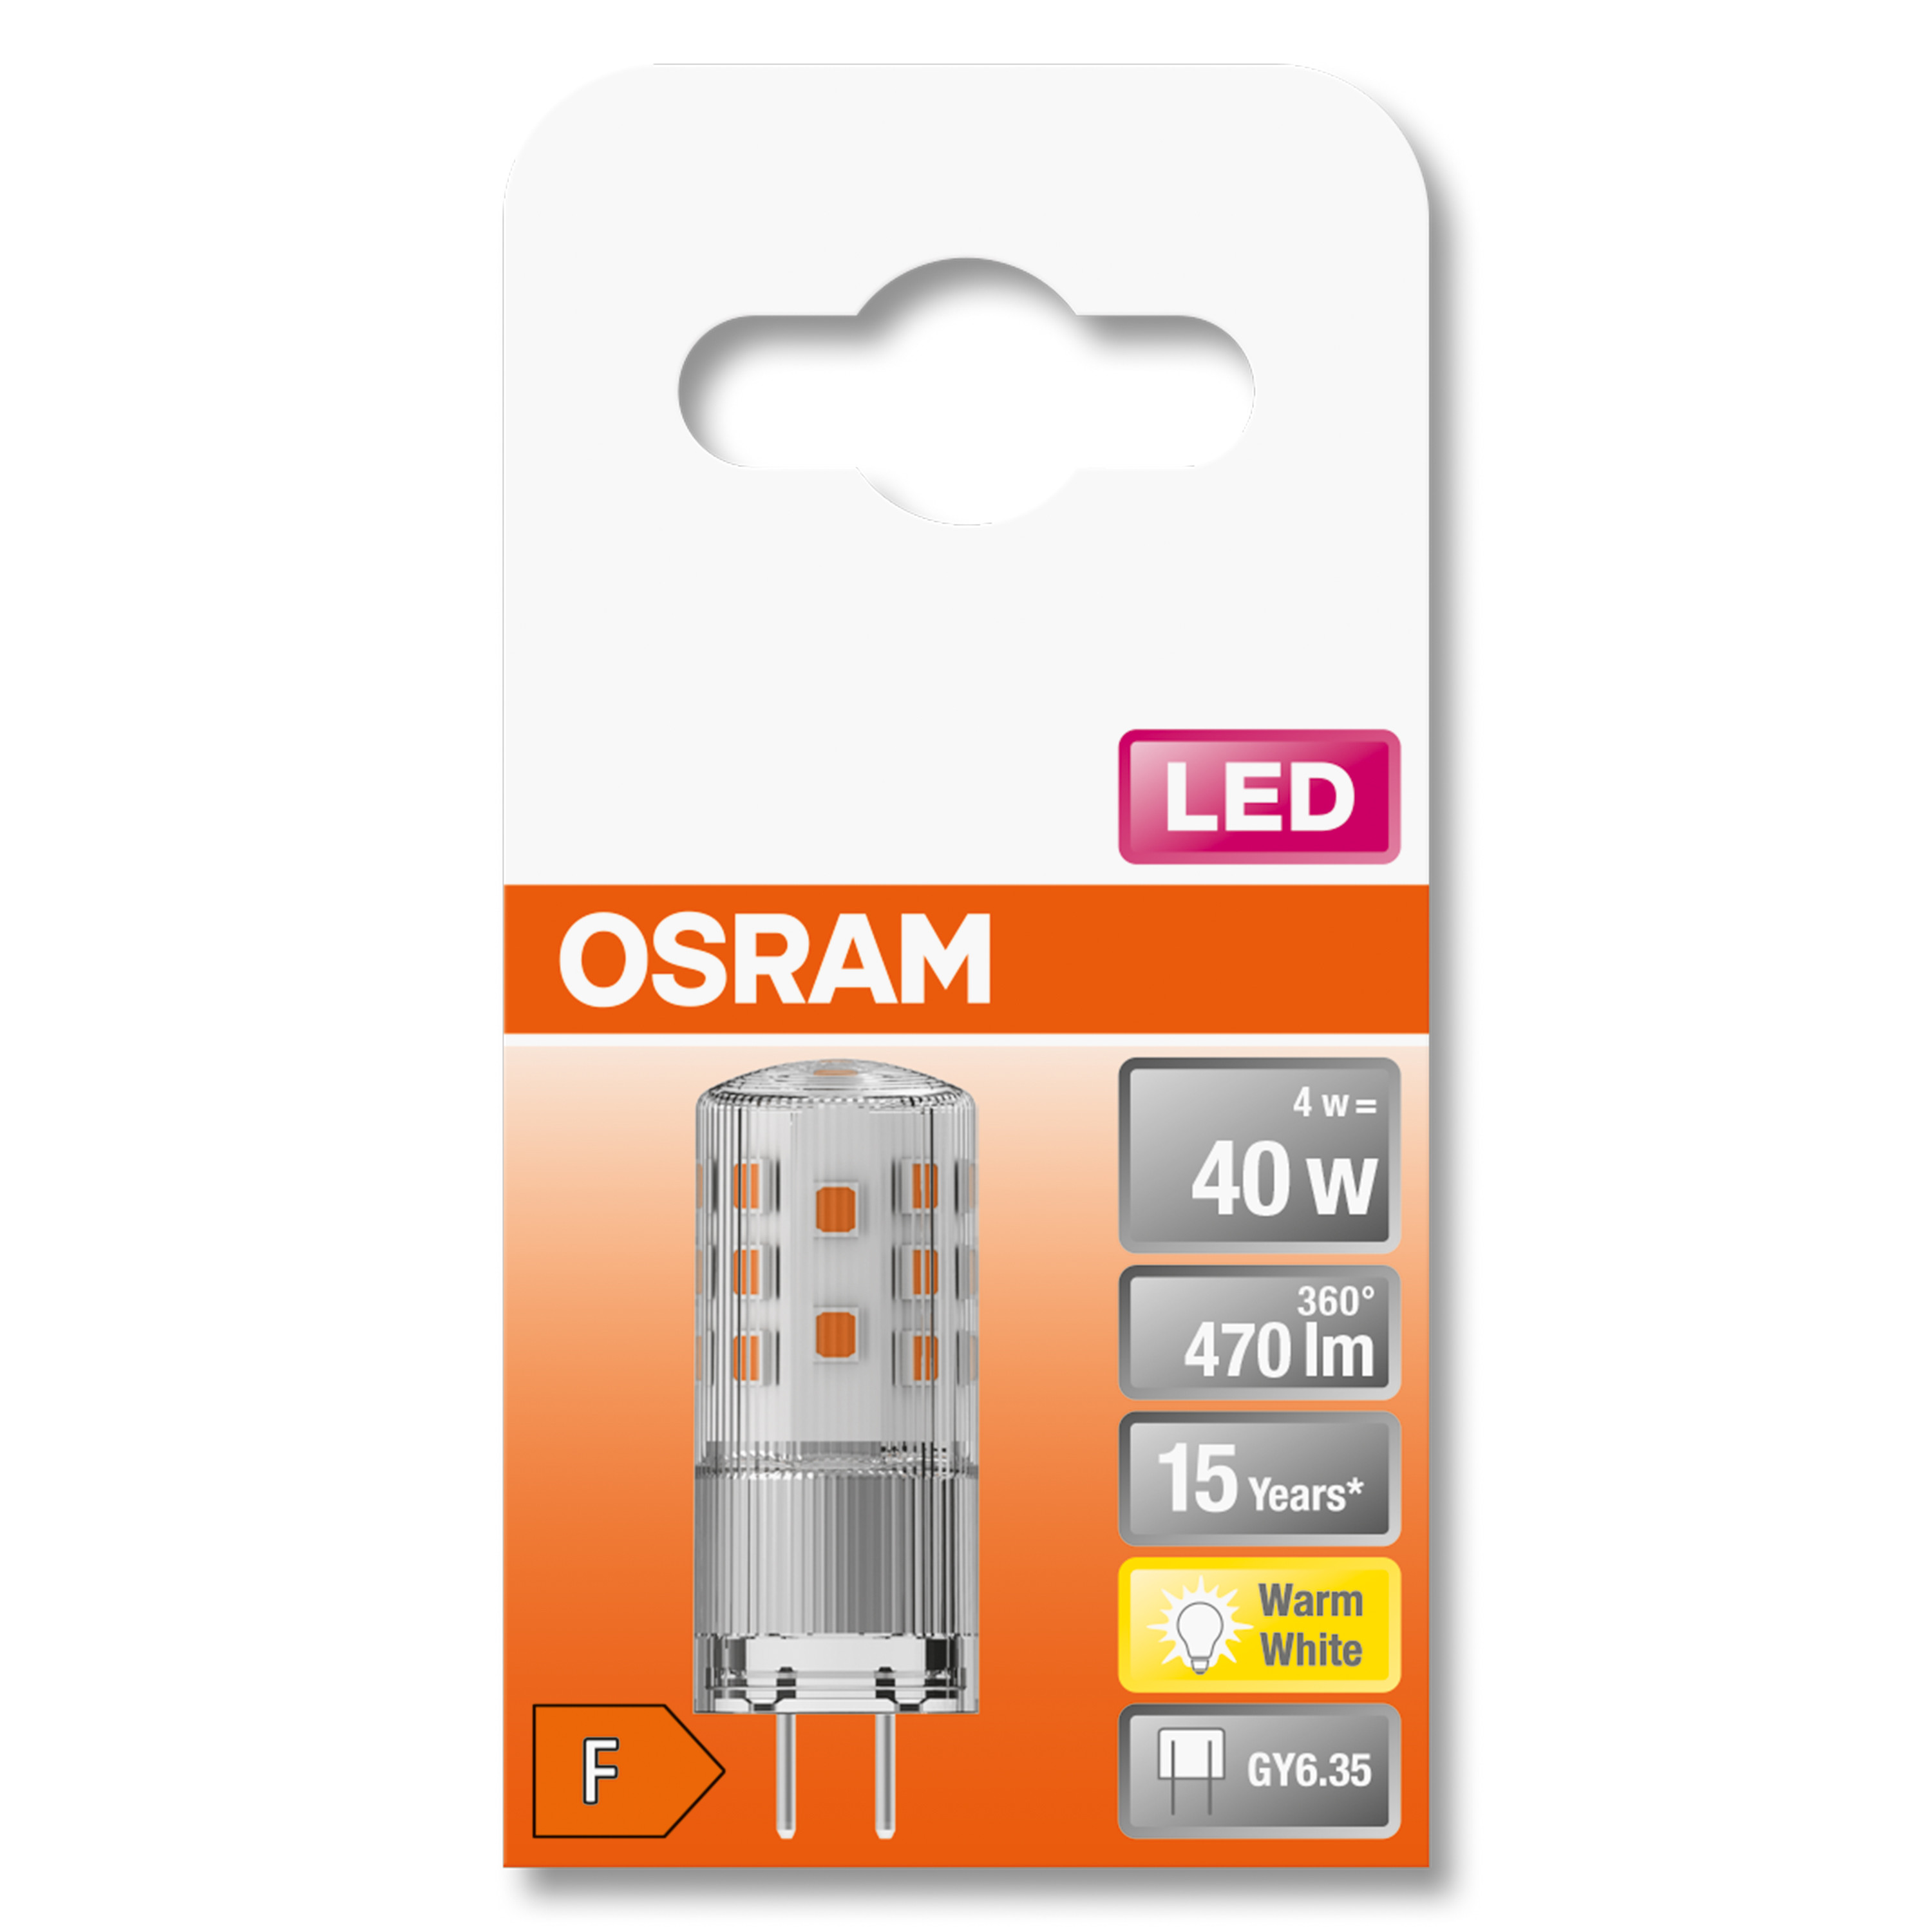 OSRAM  LED PIN 12 Warmweiß LED lumen Lampe V 470